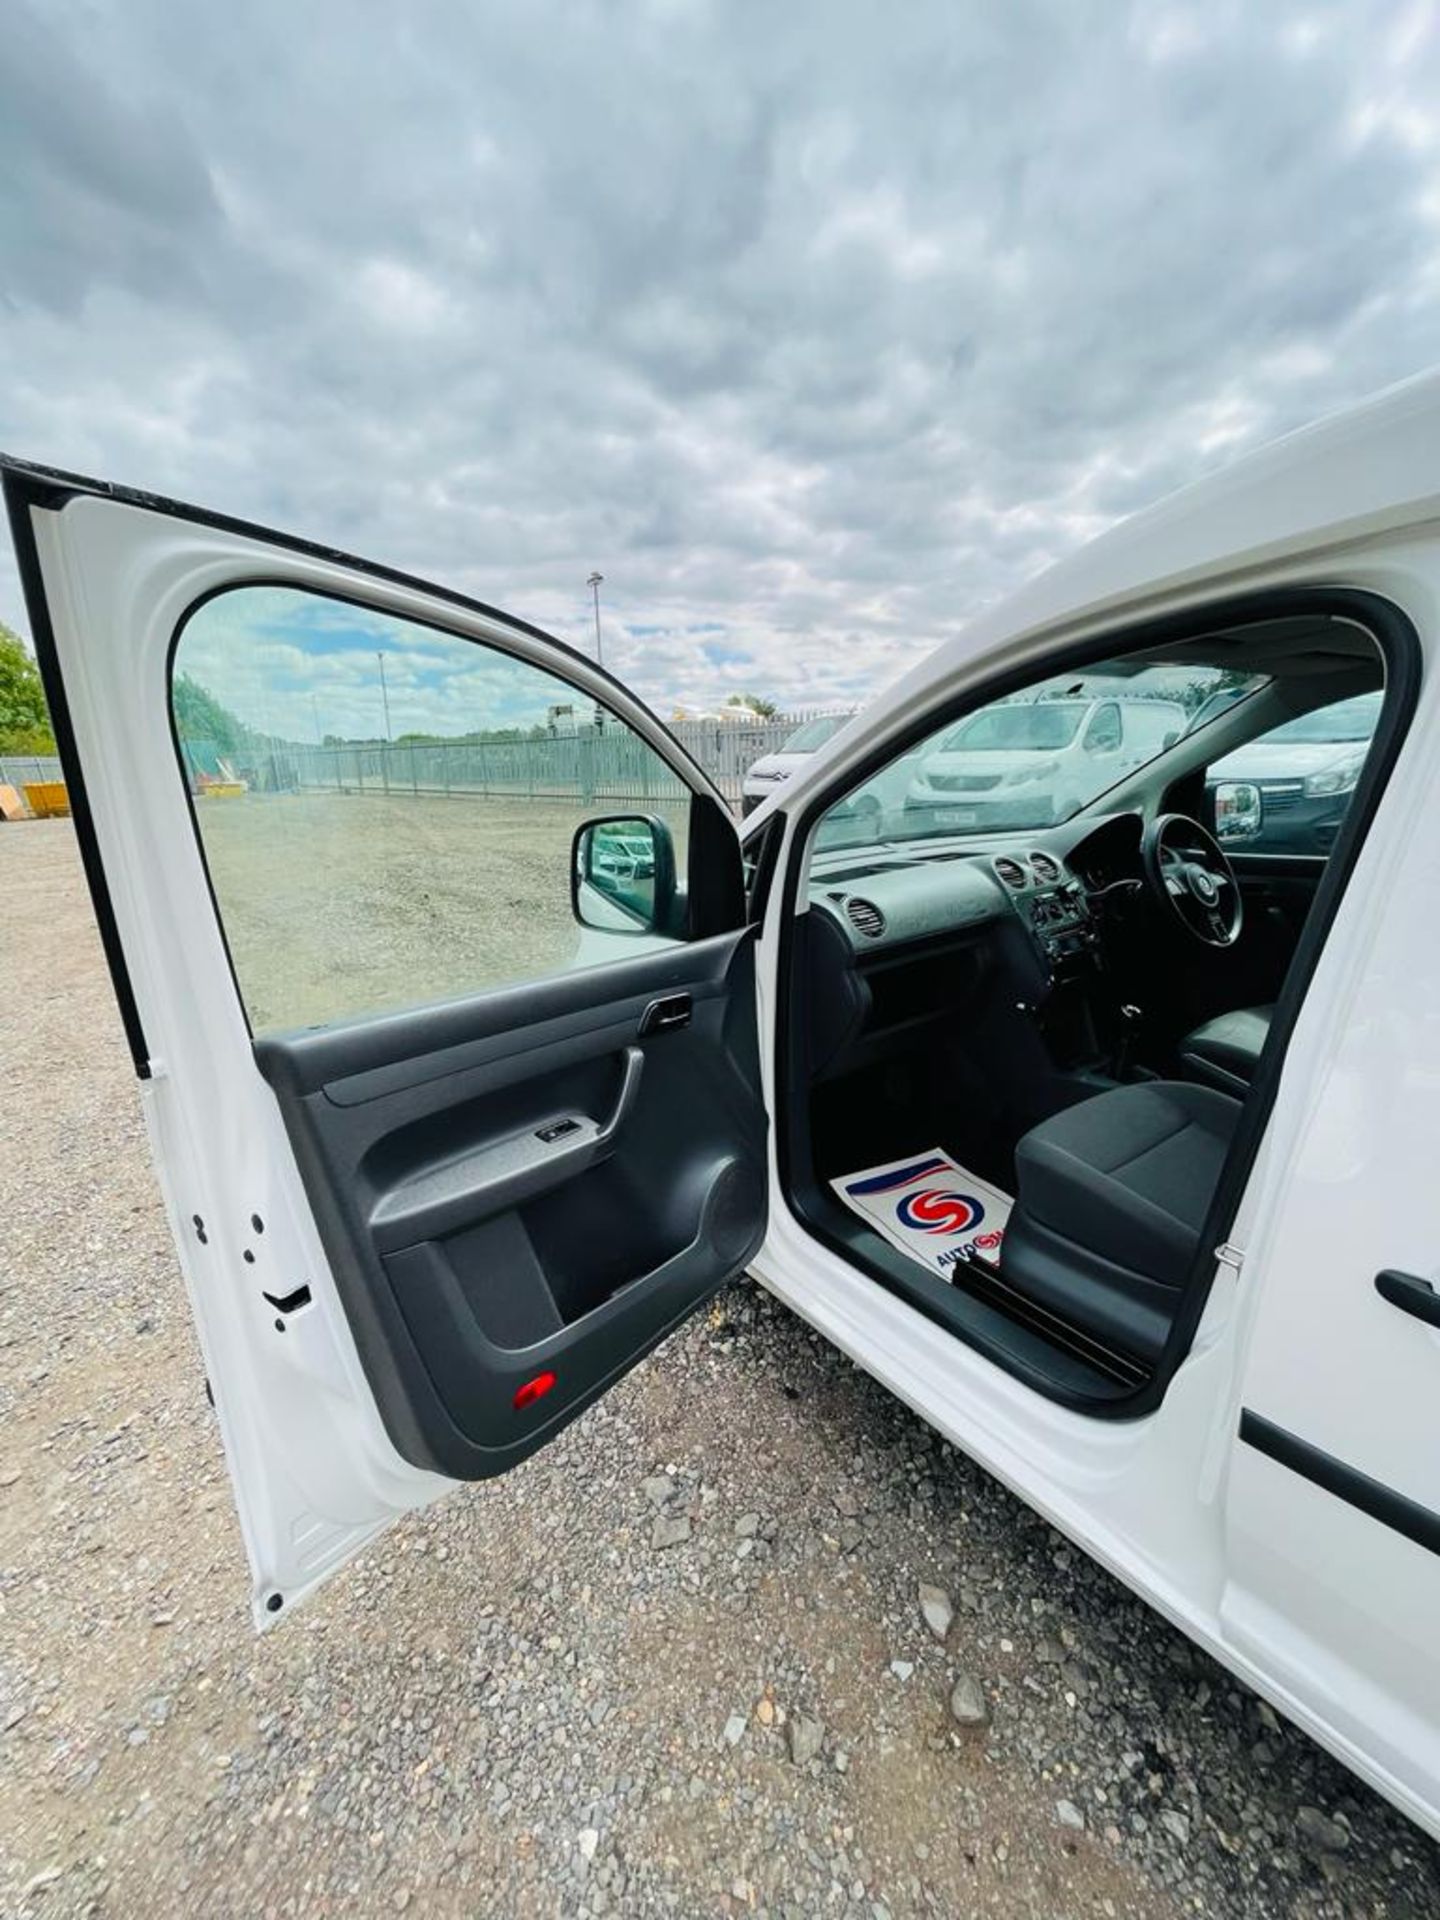 ** ON SALE ** Volkswagen Caddy C20 1.6 TDI StartLine 102 2015 '15 Reg' Panel Van - Very Economical - Image 23 of 27